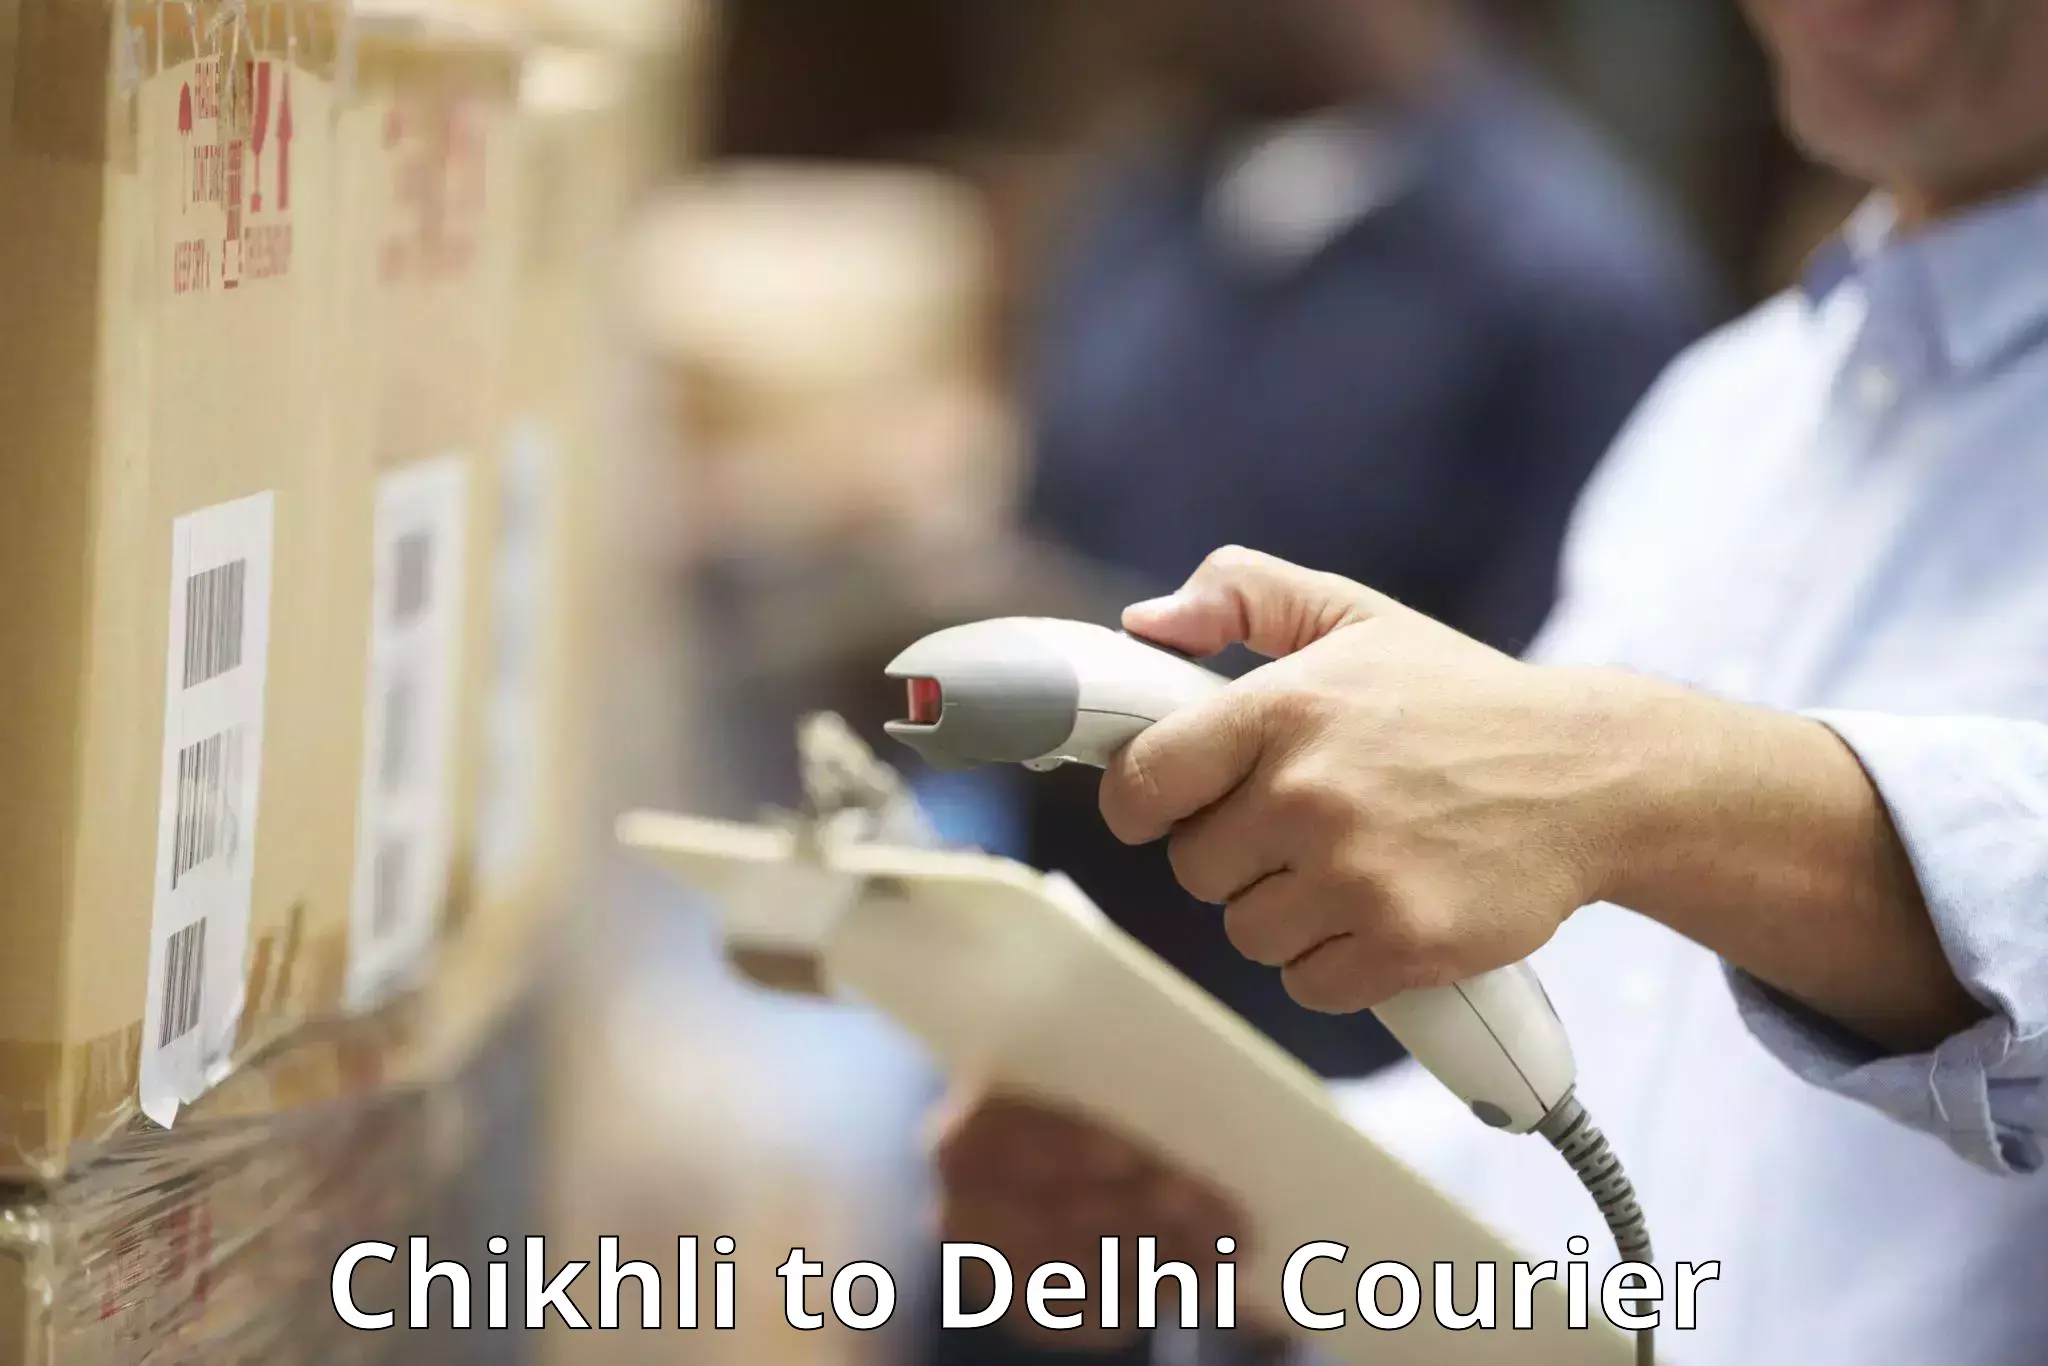 Baggage transport network Chikhli to Delhi